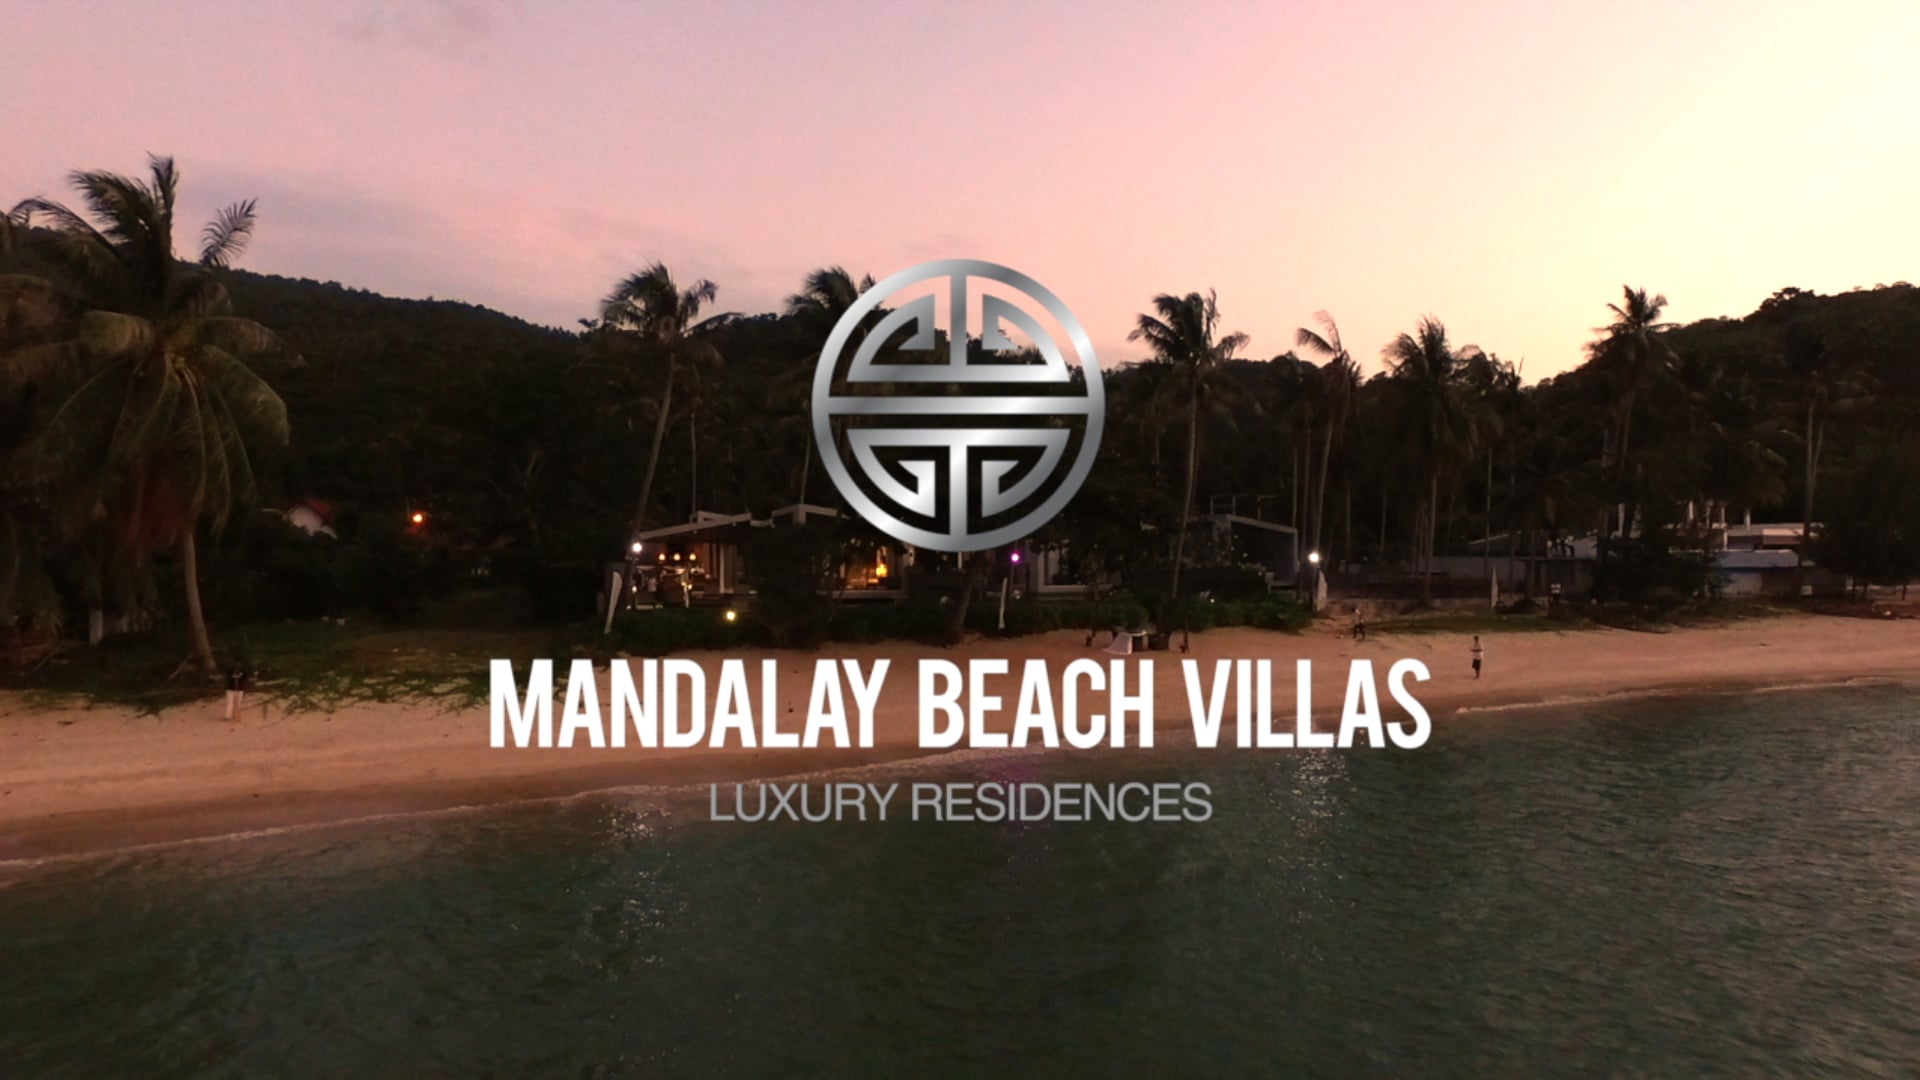 Mandalay Beach Villas